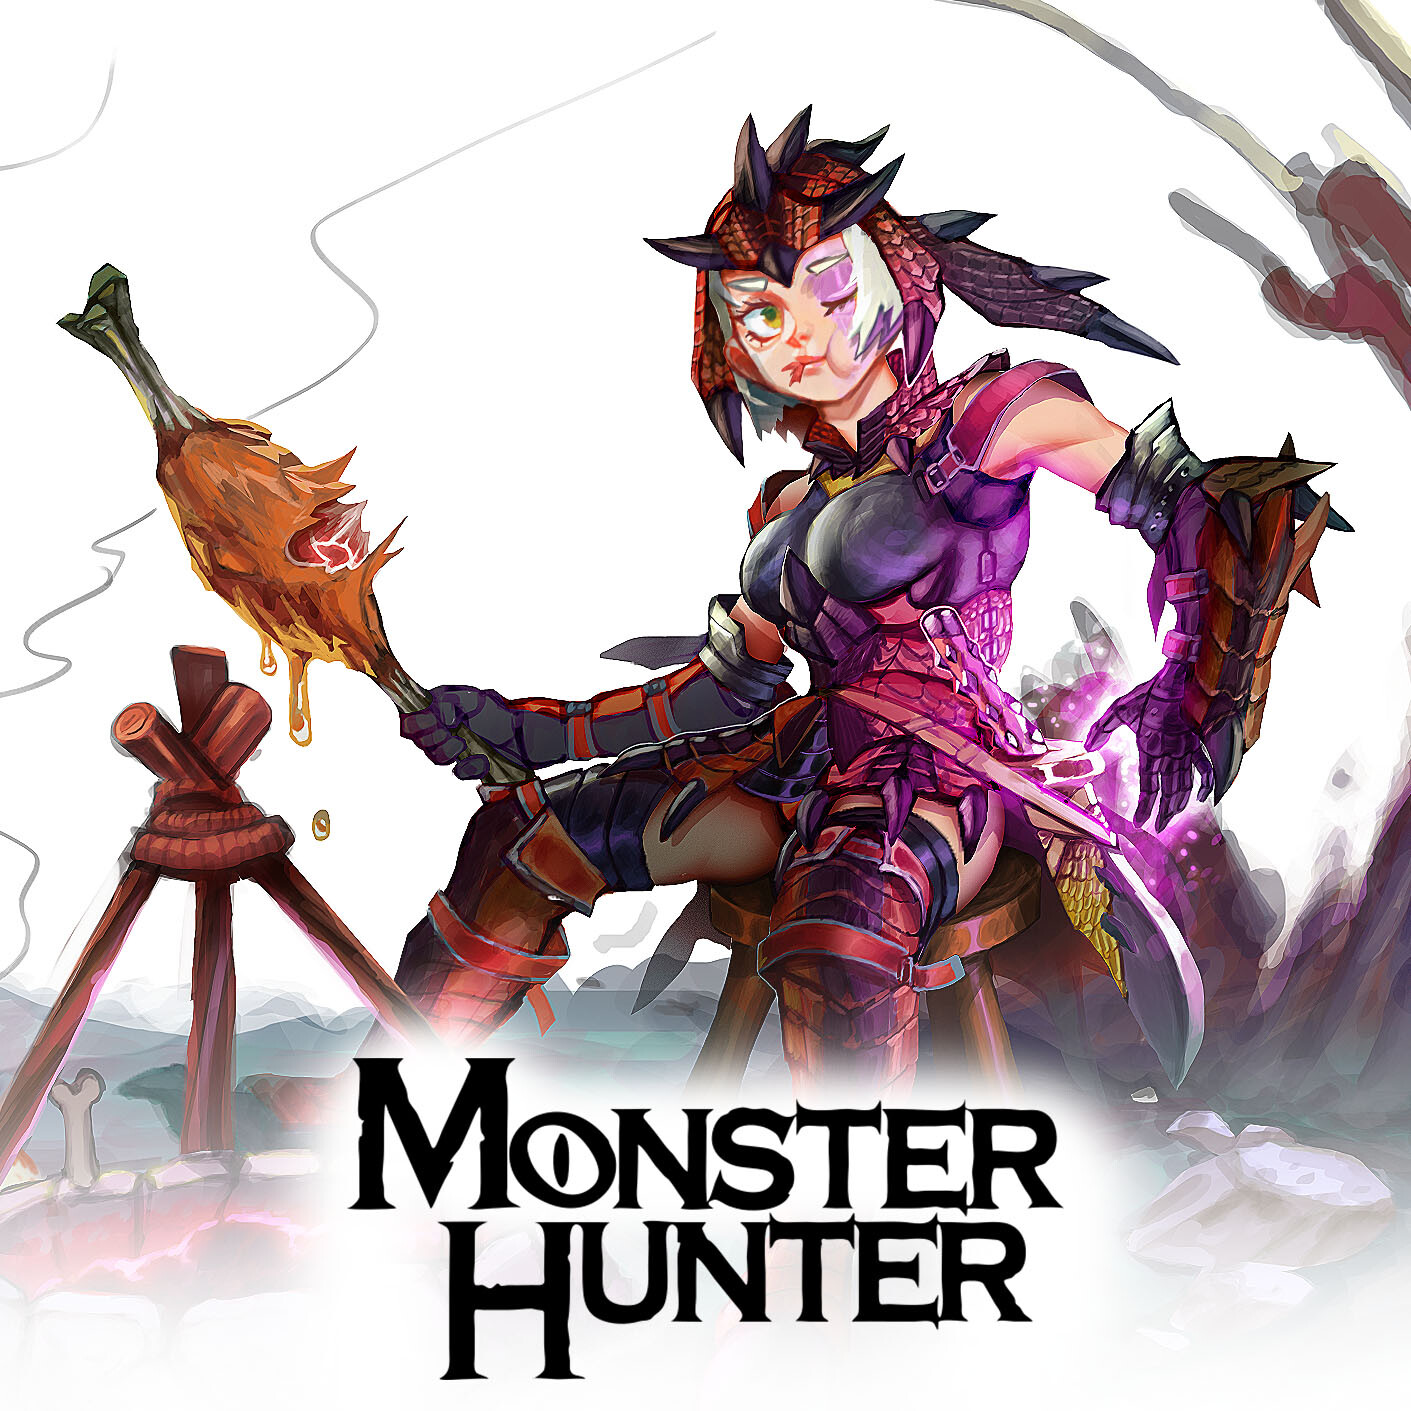 Monster Hunter Fanart - Rathalos hunter on the trail, Brad Mesina.